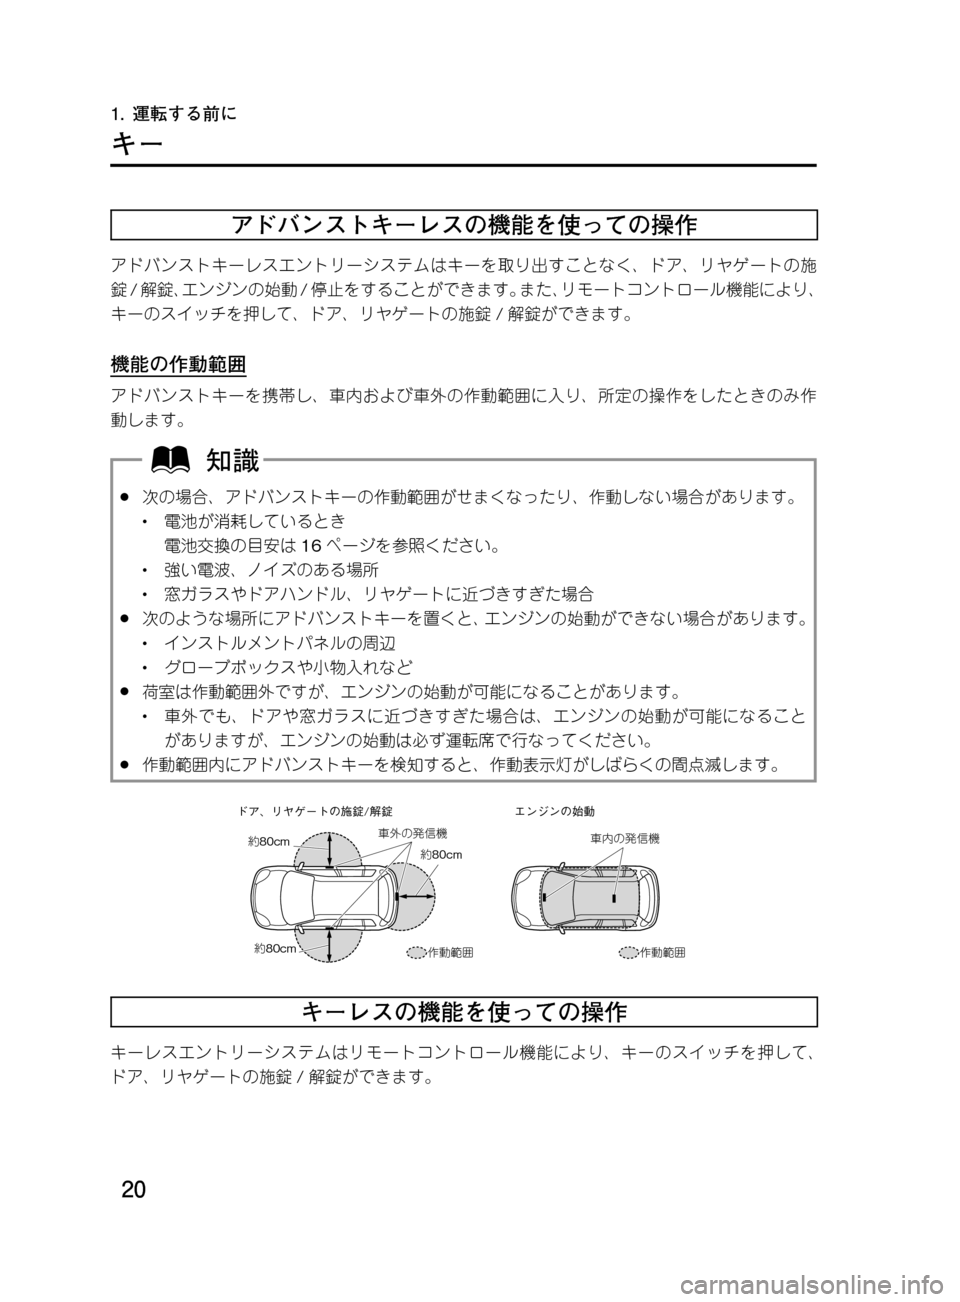 MAZDA MODEL DEMIO 2011  デミオ｜取扱説明書 (in Japanese) ��
��P�S�N��/�P���% 